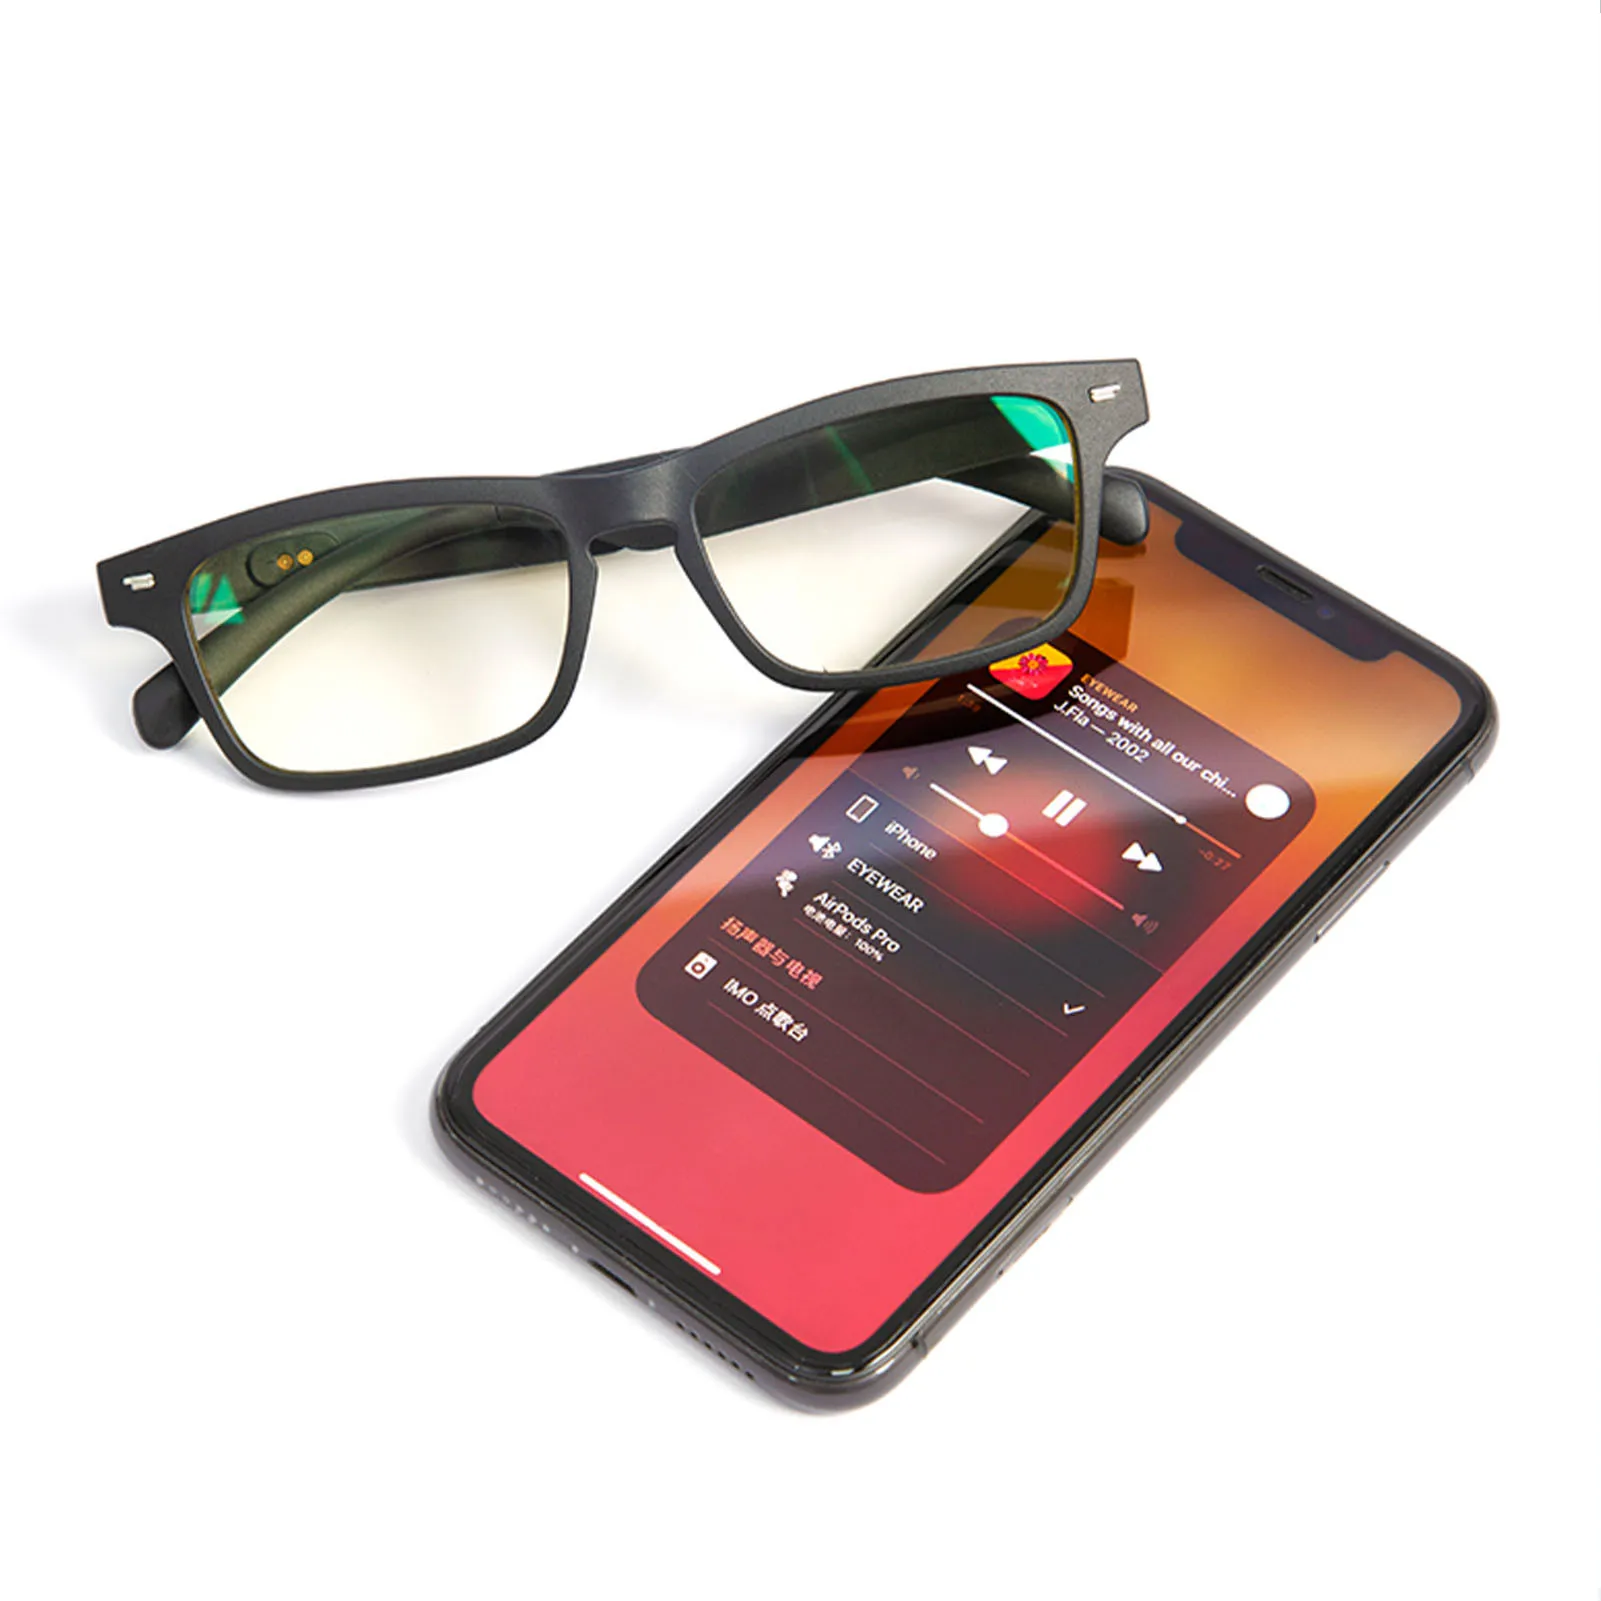 저렴한 신제품 블루투스 무선 오픈 엔드 안경 핸즈프리 헤드셋, 자기 충전 IPX5 방수 선글라스 음악 헤드폰 마이크 포함